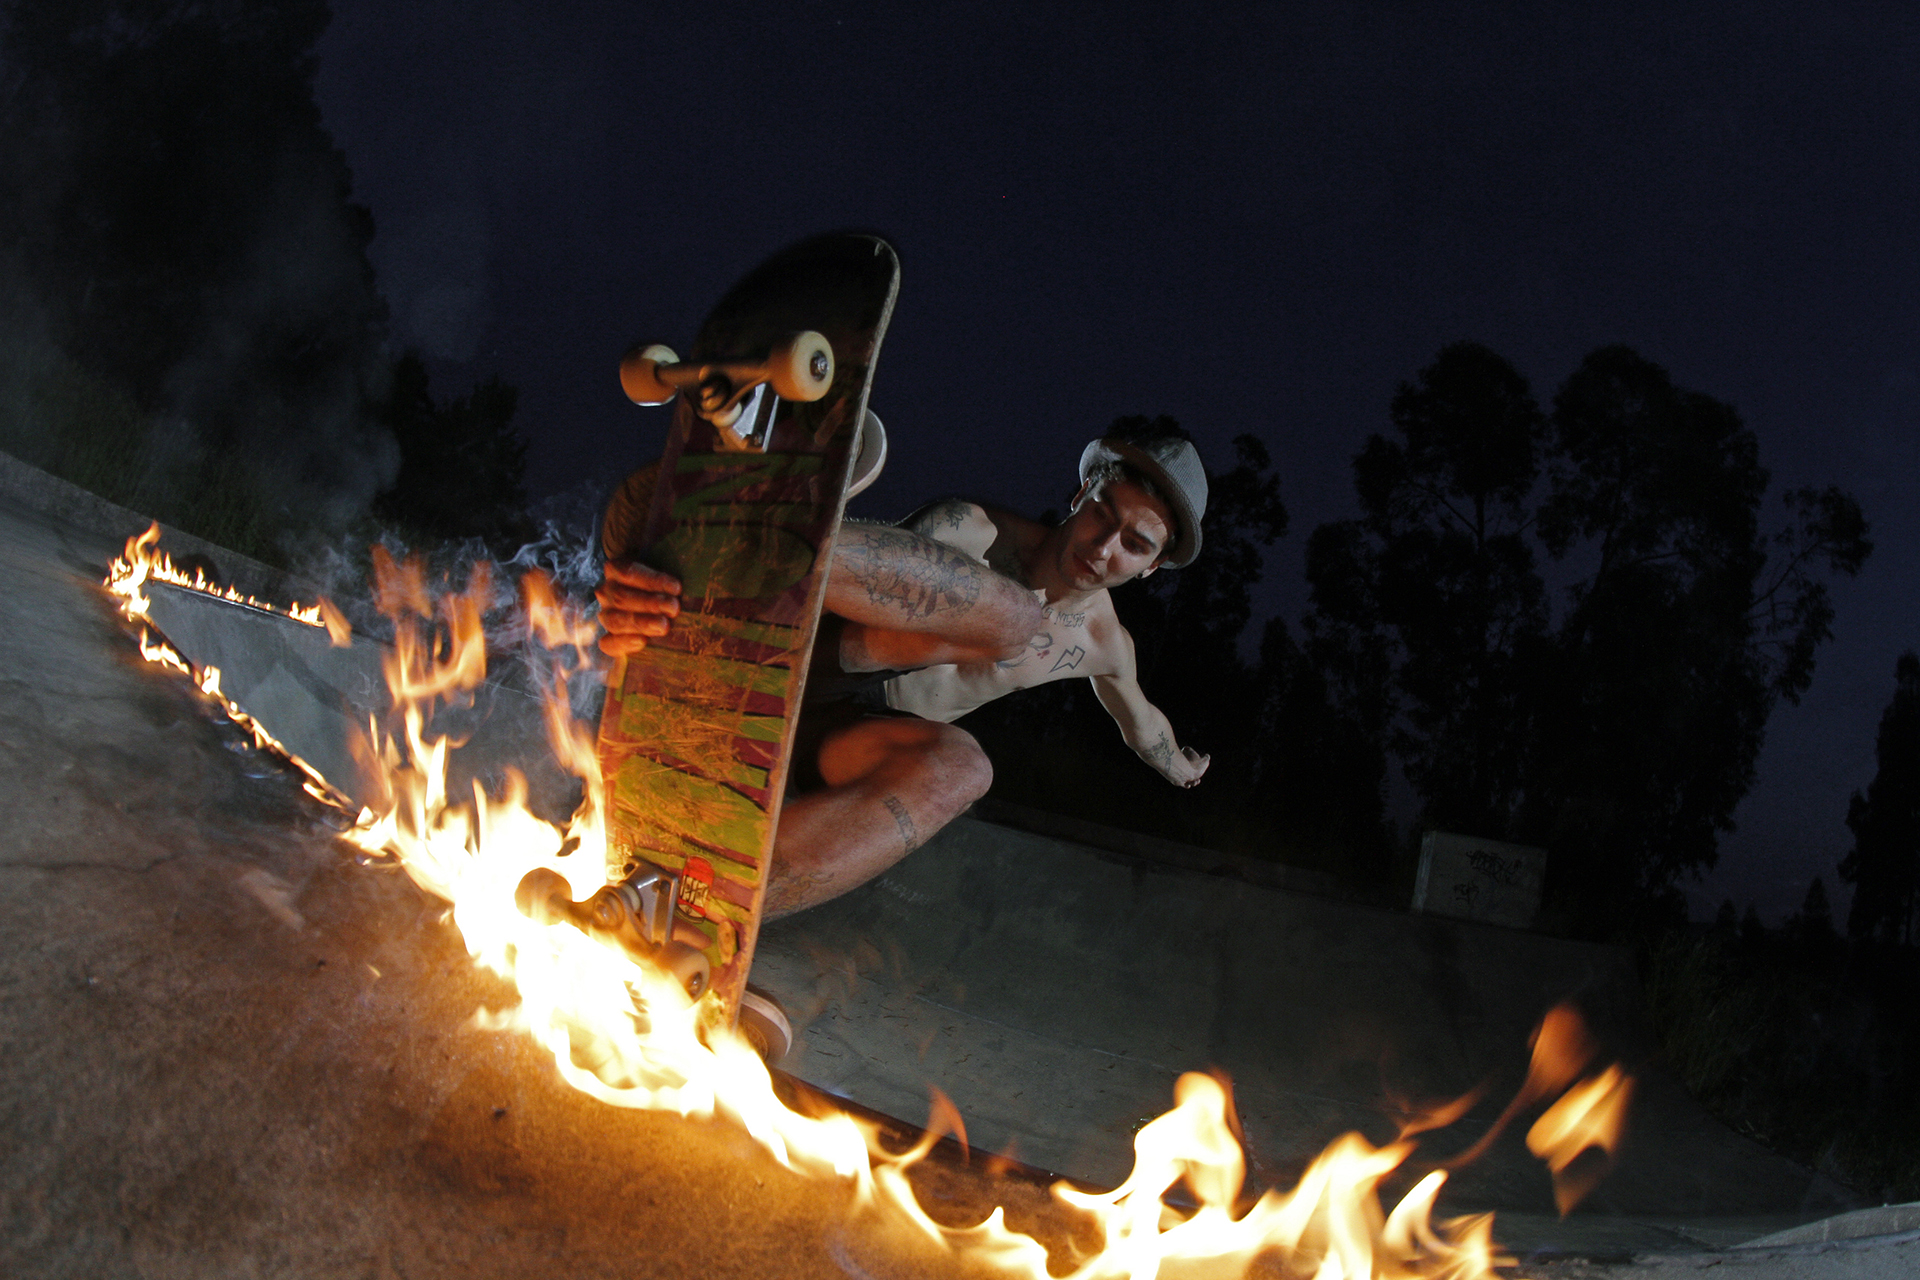 Skateboarding_Life_Renato_Lainho_com (1c)